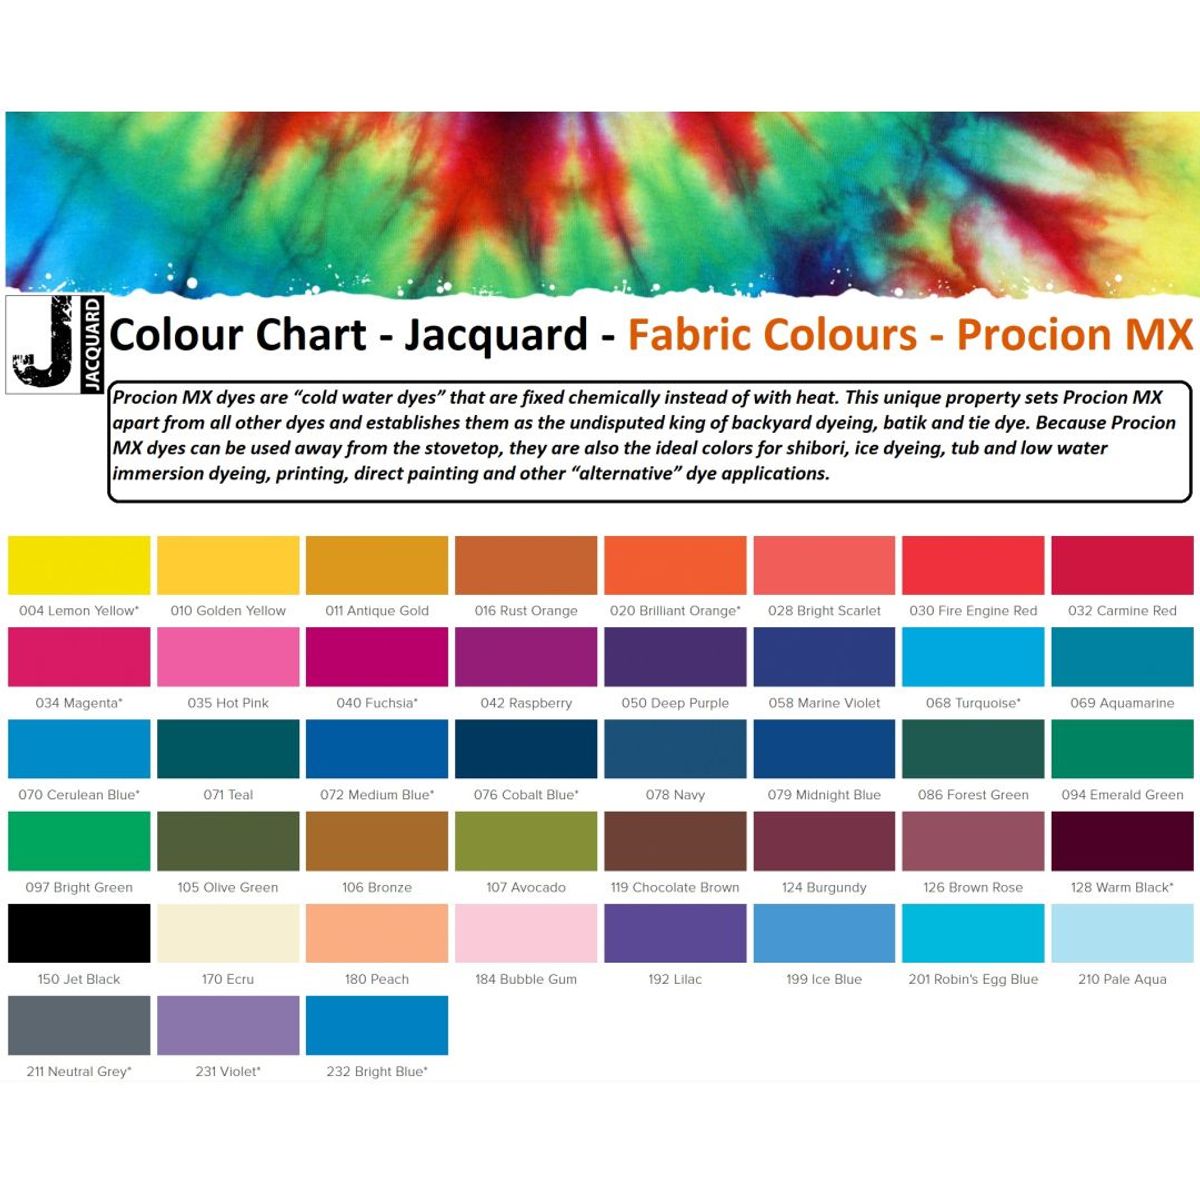 Jacquard - Procion MX Dye - Fabric Textile - Cobalt Blue 076